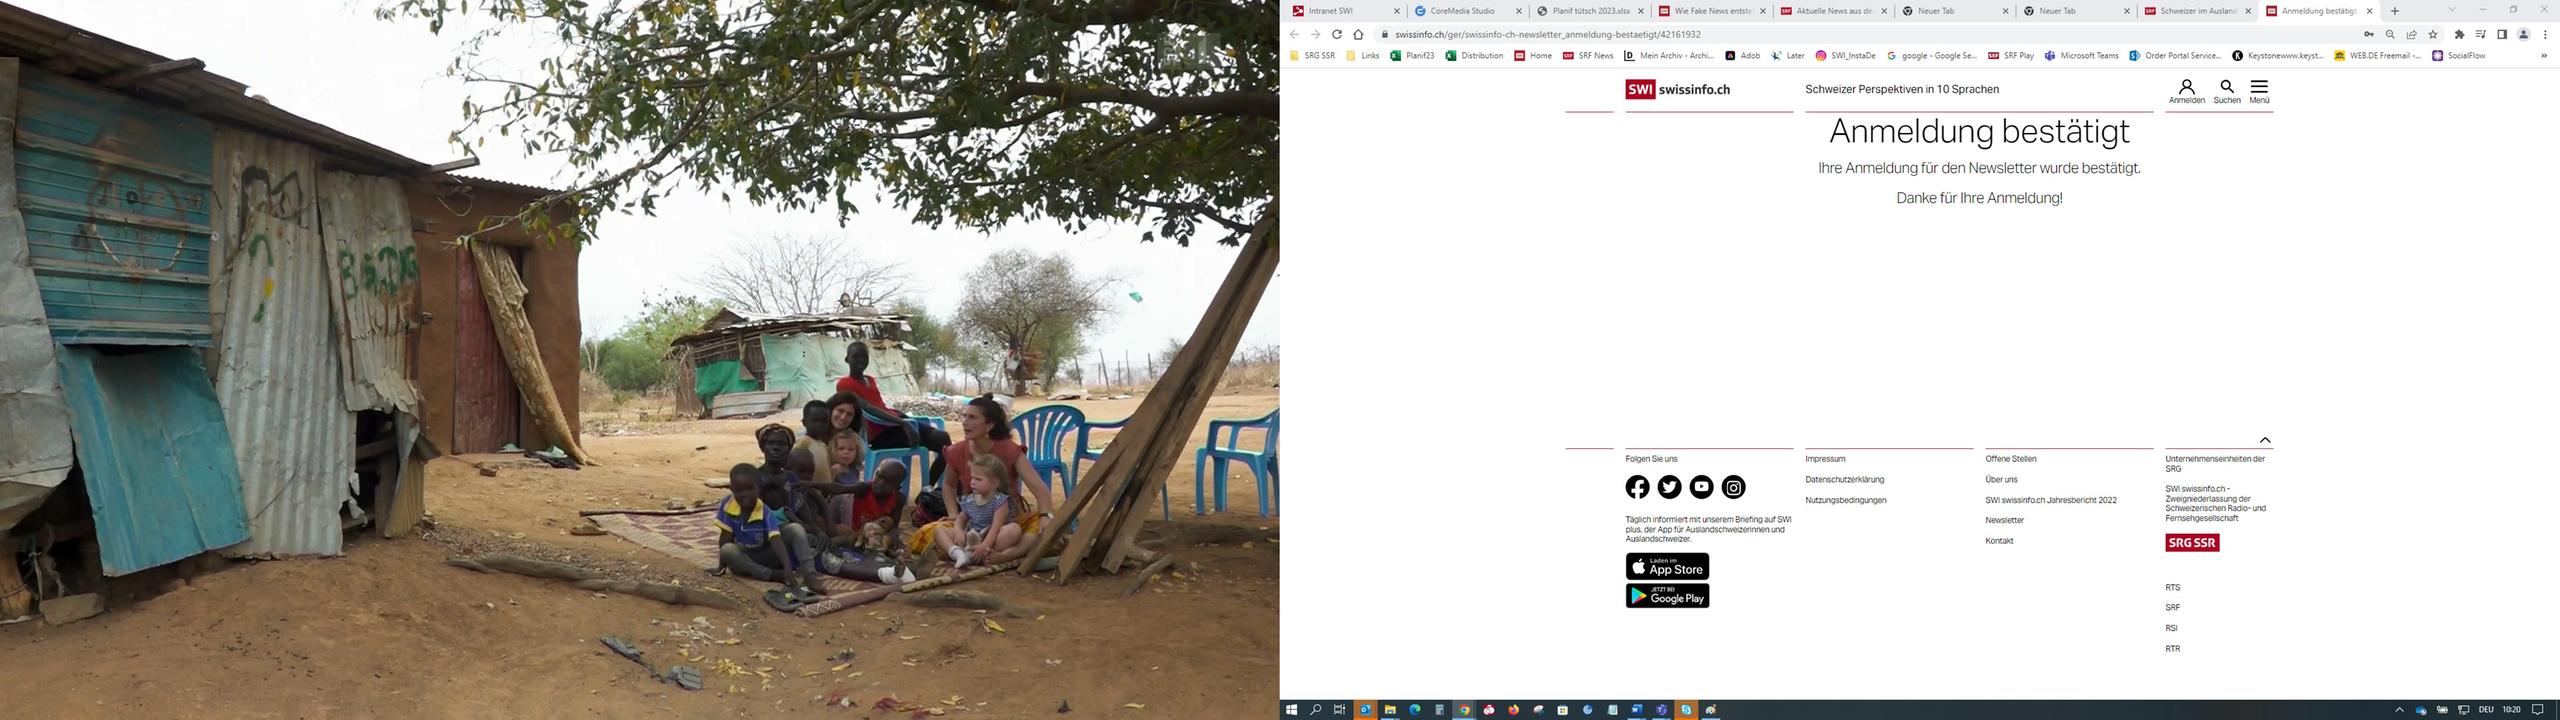 zwei weisse Frauen sitzen mit dunkelhäutigen Kindern unter einem Baum im Sand